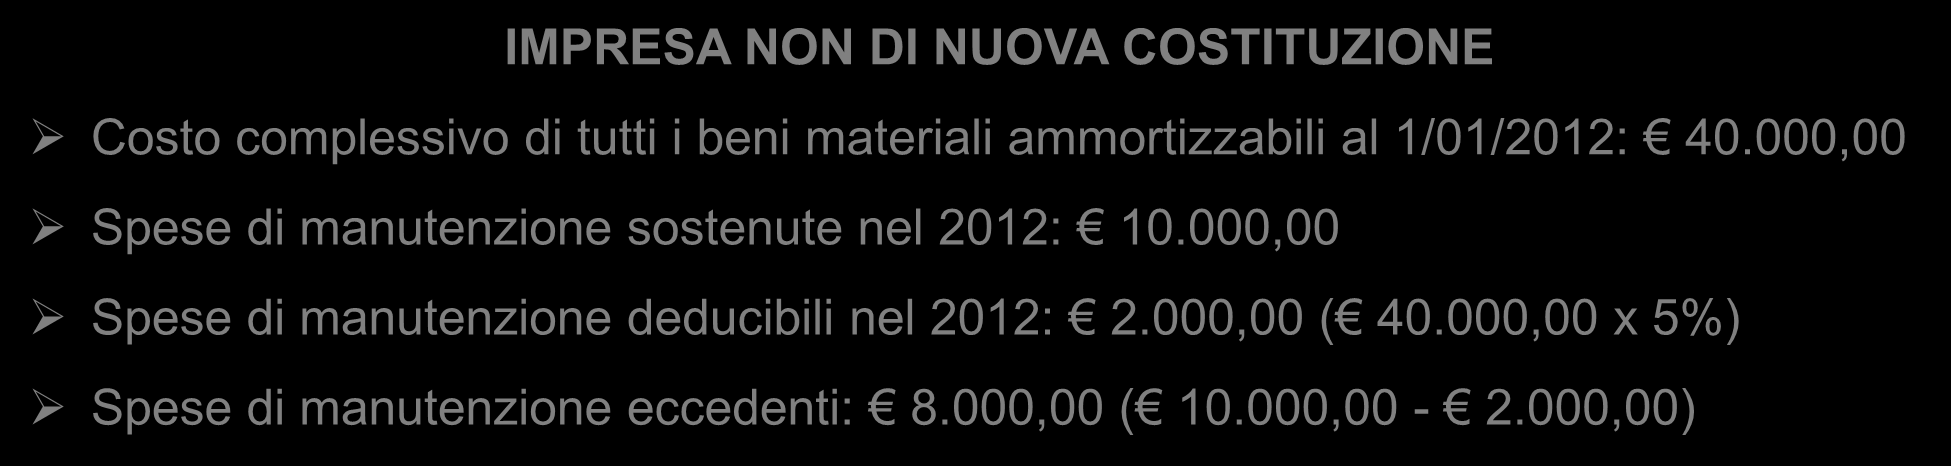 SPESE DI MANUTENZIONE IMPRESA NON DI NUOVA COSTITUZIONE Costo complessivo di tutti i beni materiali ammortizzabili al 1/01/2012: 40.000,00 Spese di manutenzione sostenute nel 2012: 10.